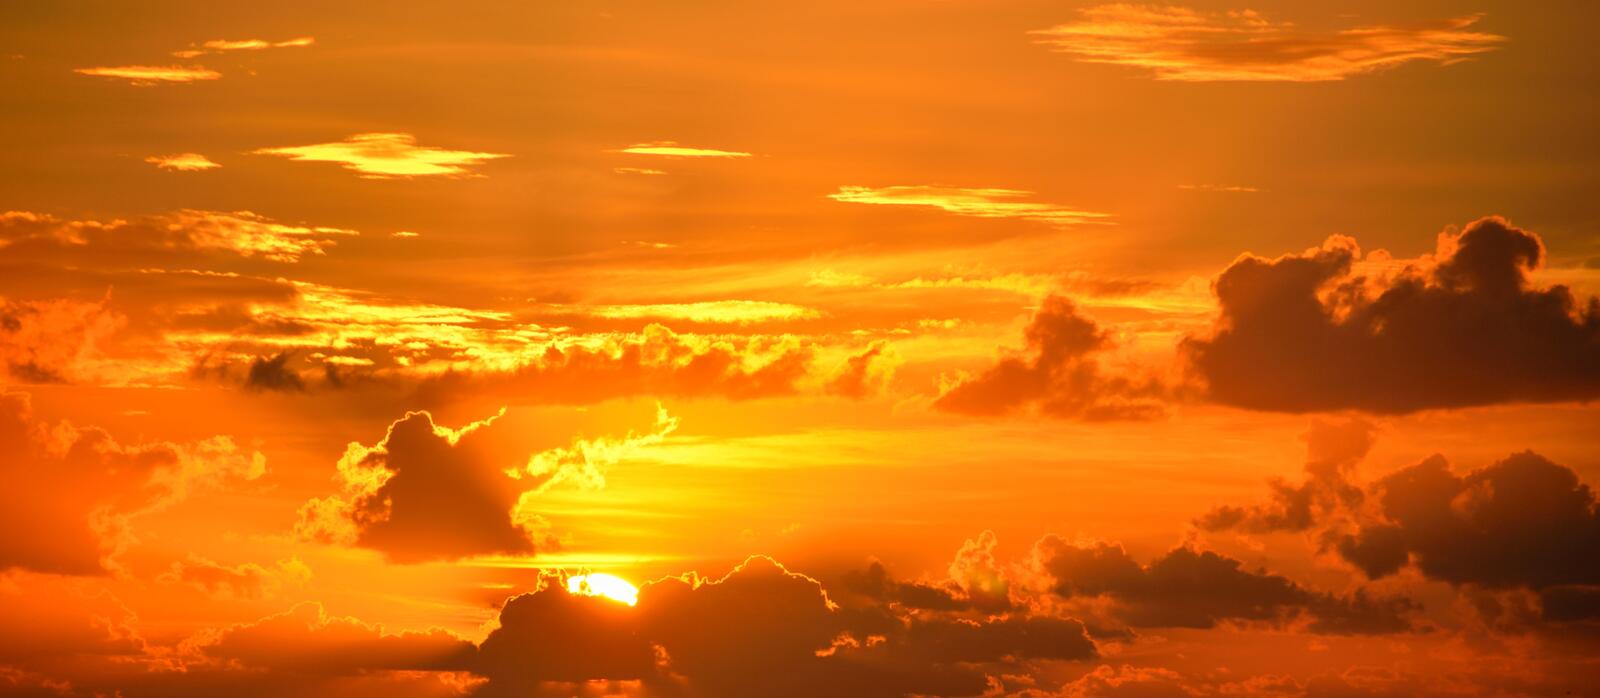 Бесплатное фото Красивый закат в янтарном небе с облаками